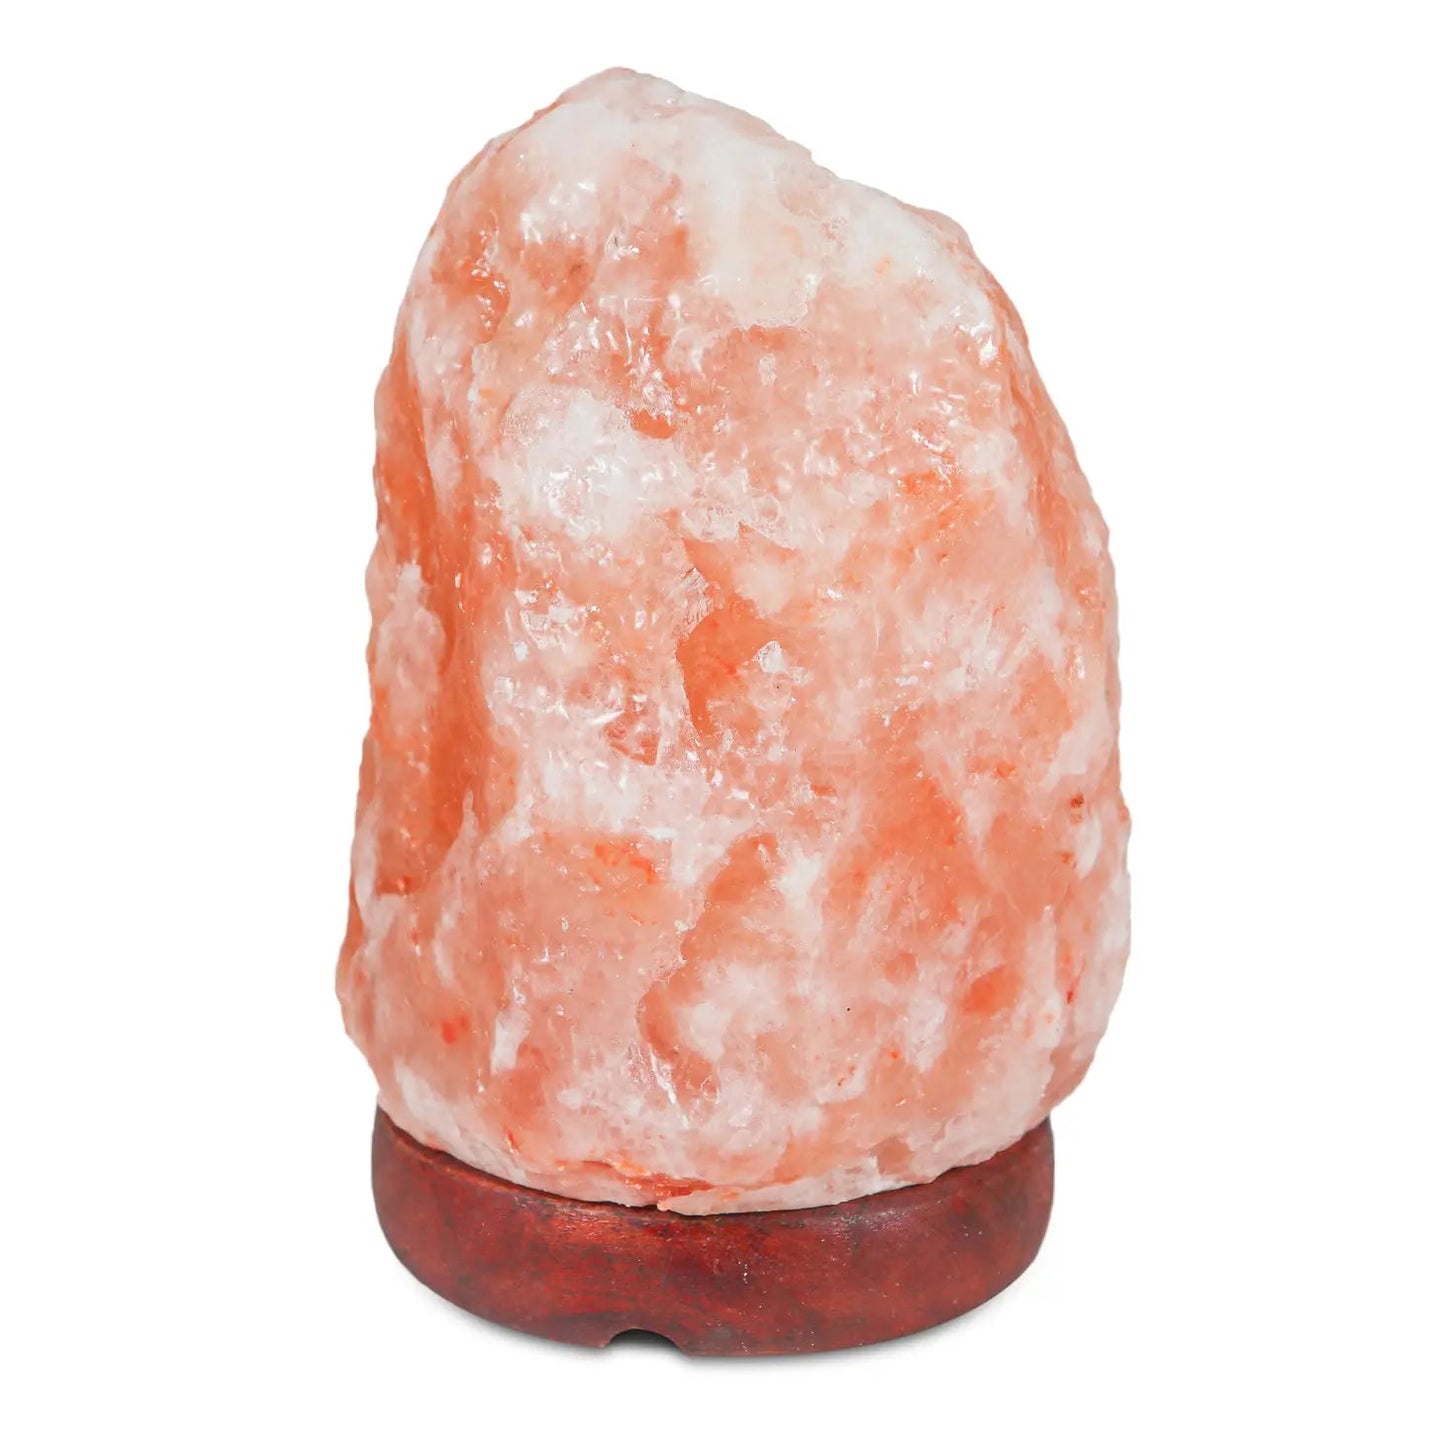 Natural Pink Himalayan Salt Lamp - 3-5 Lbs - Mindful Living Home